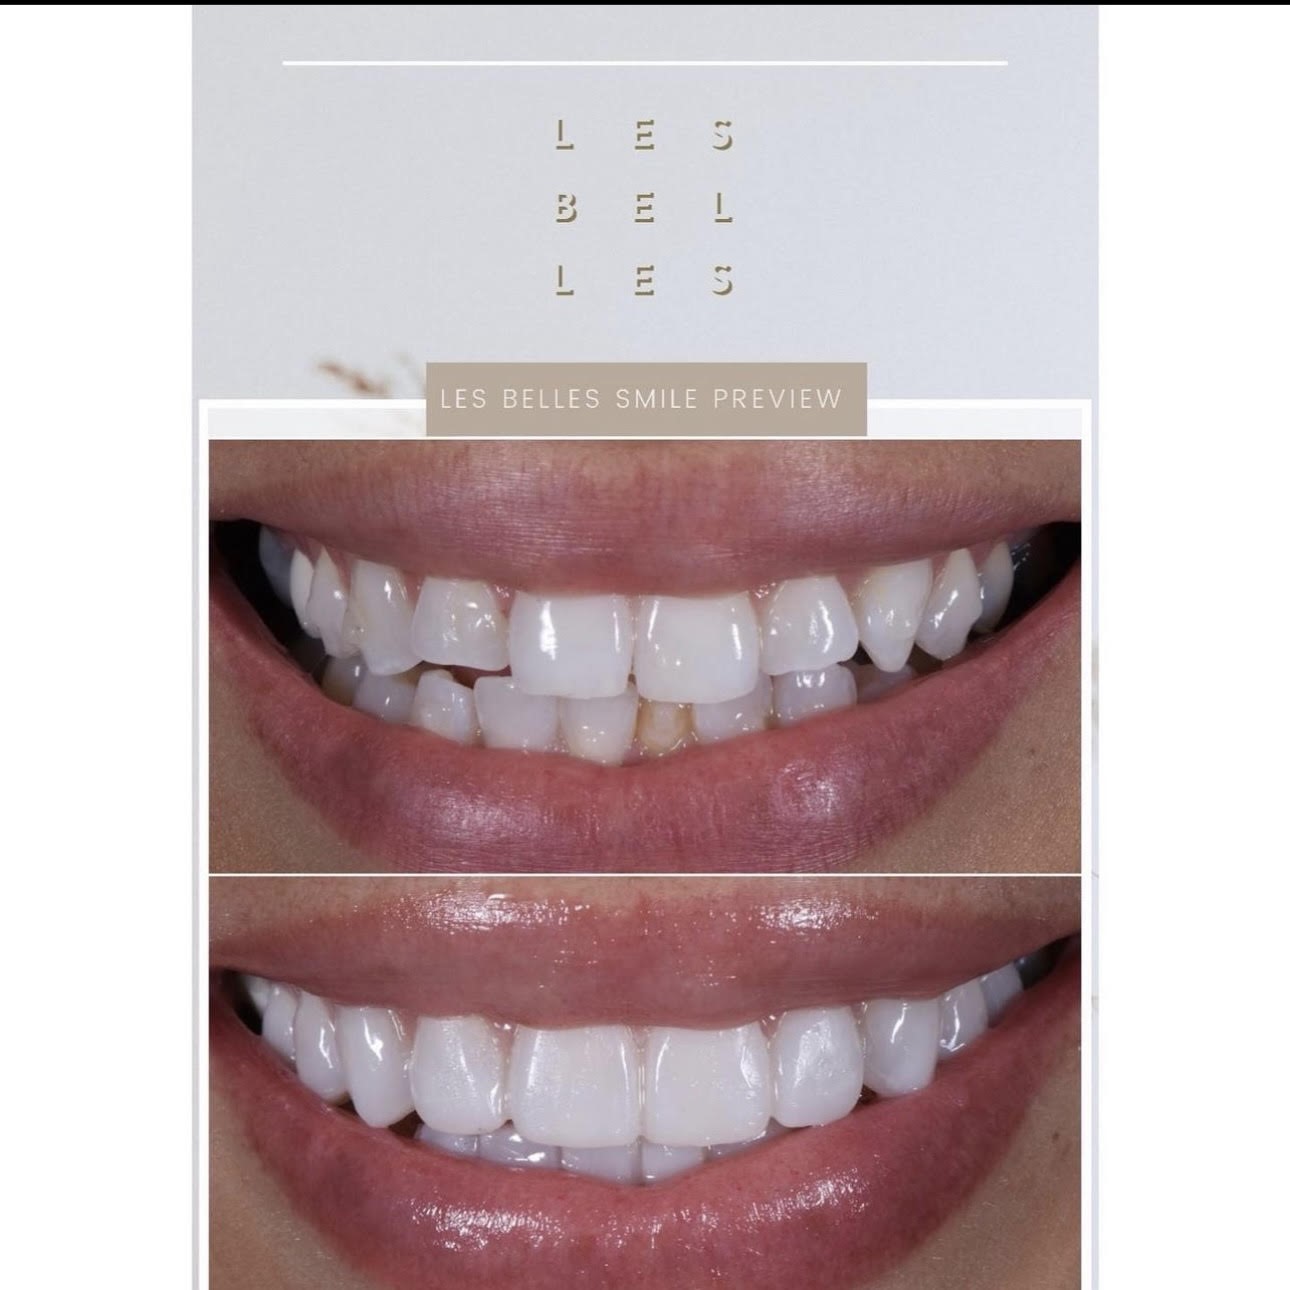 Les Bel Les, Les Belles Smile Preview. Teeth before and after Les Belles Smile Preview